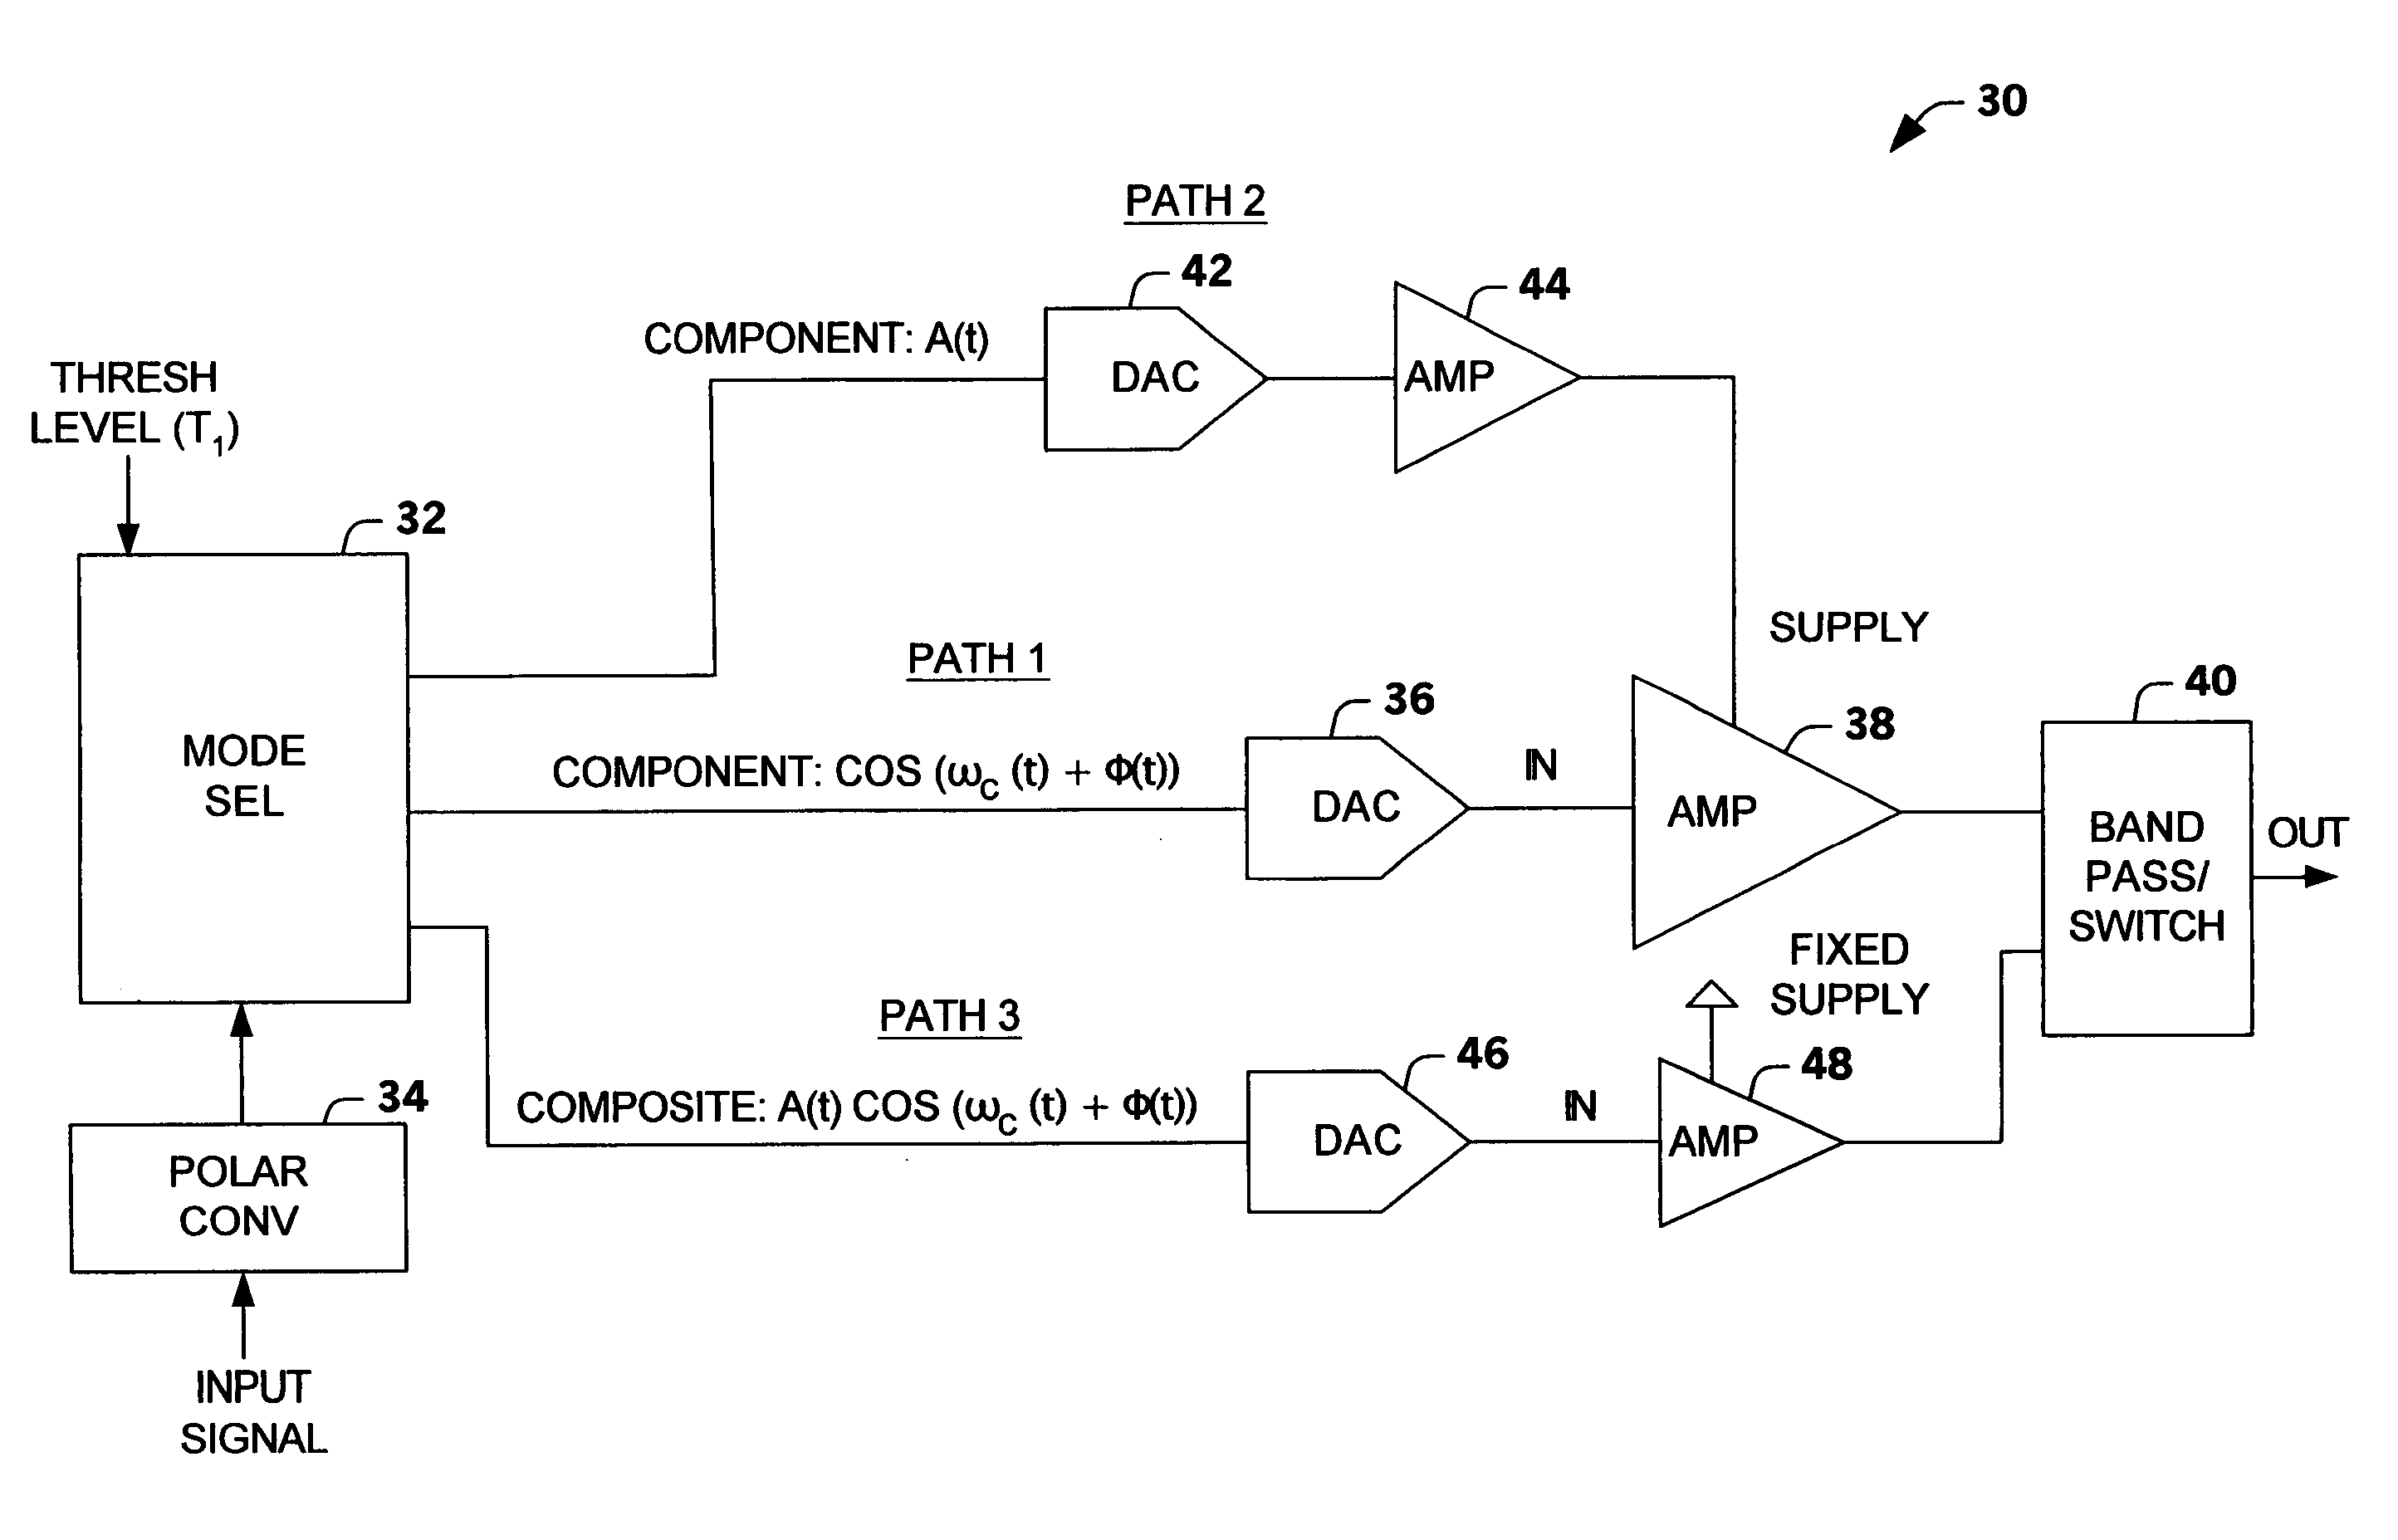 Multi-mode multi-amplifier architecture